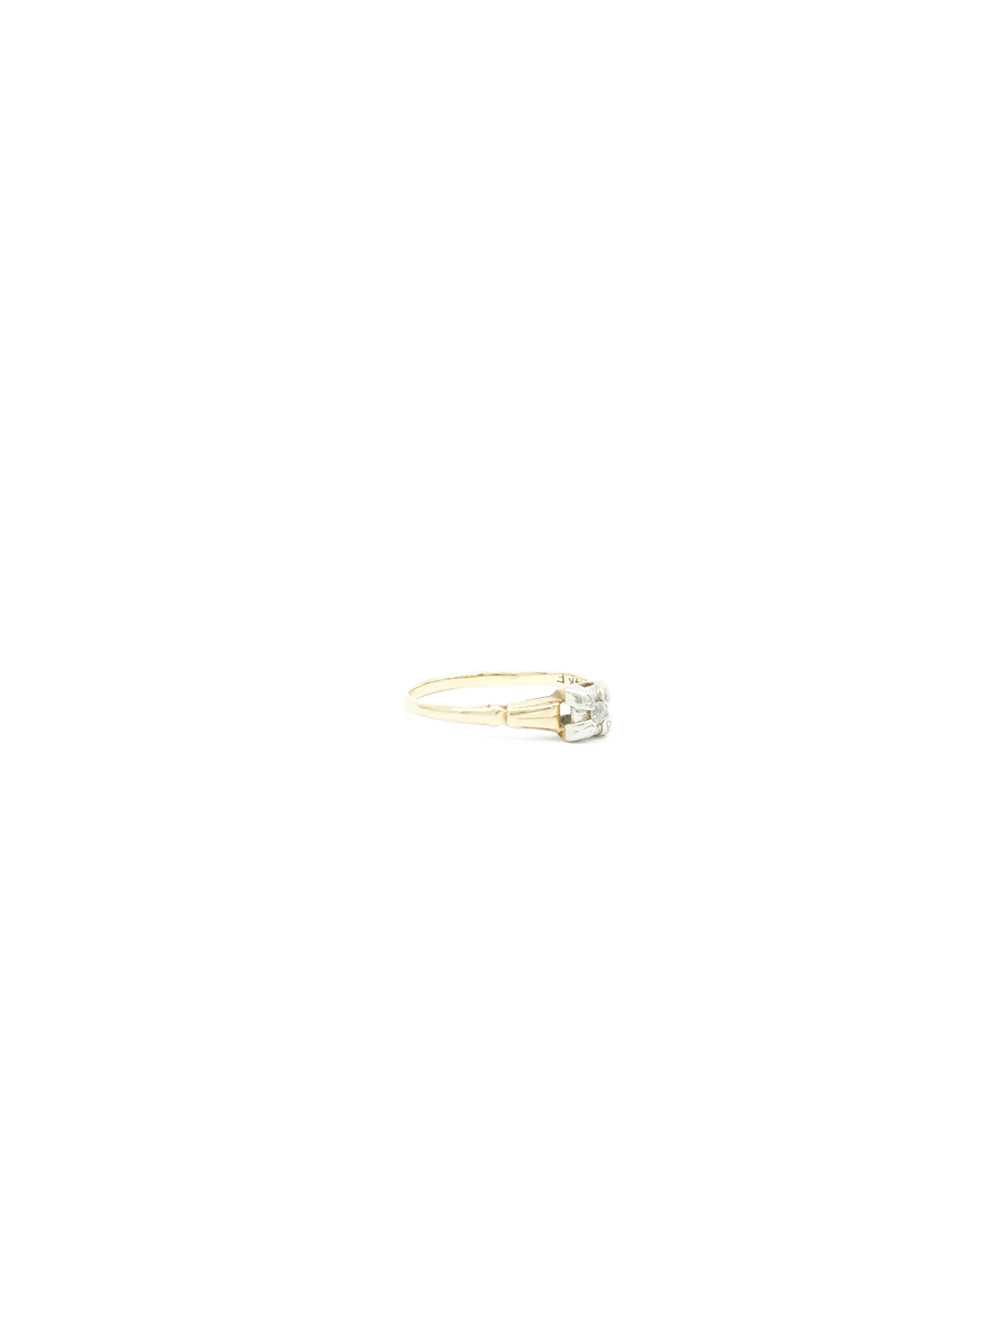 14K Gold Diamond Ring - image 3